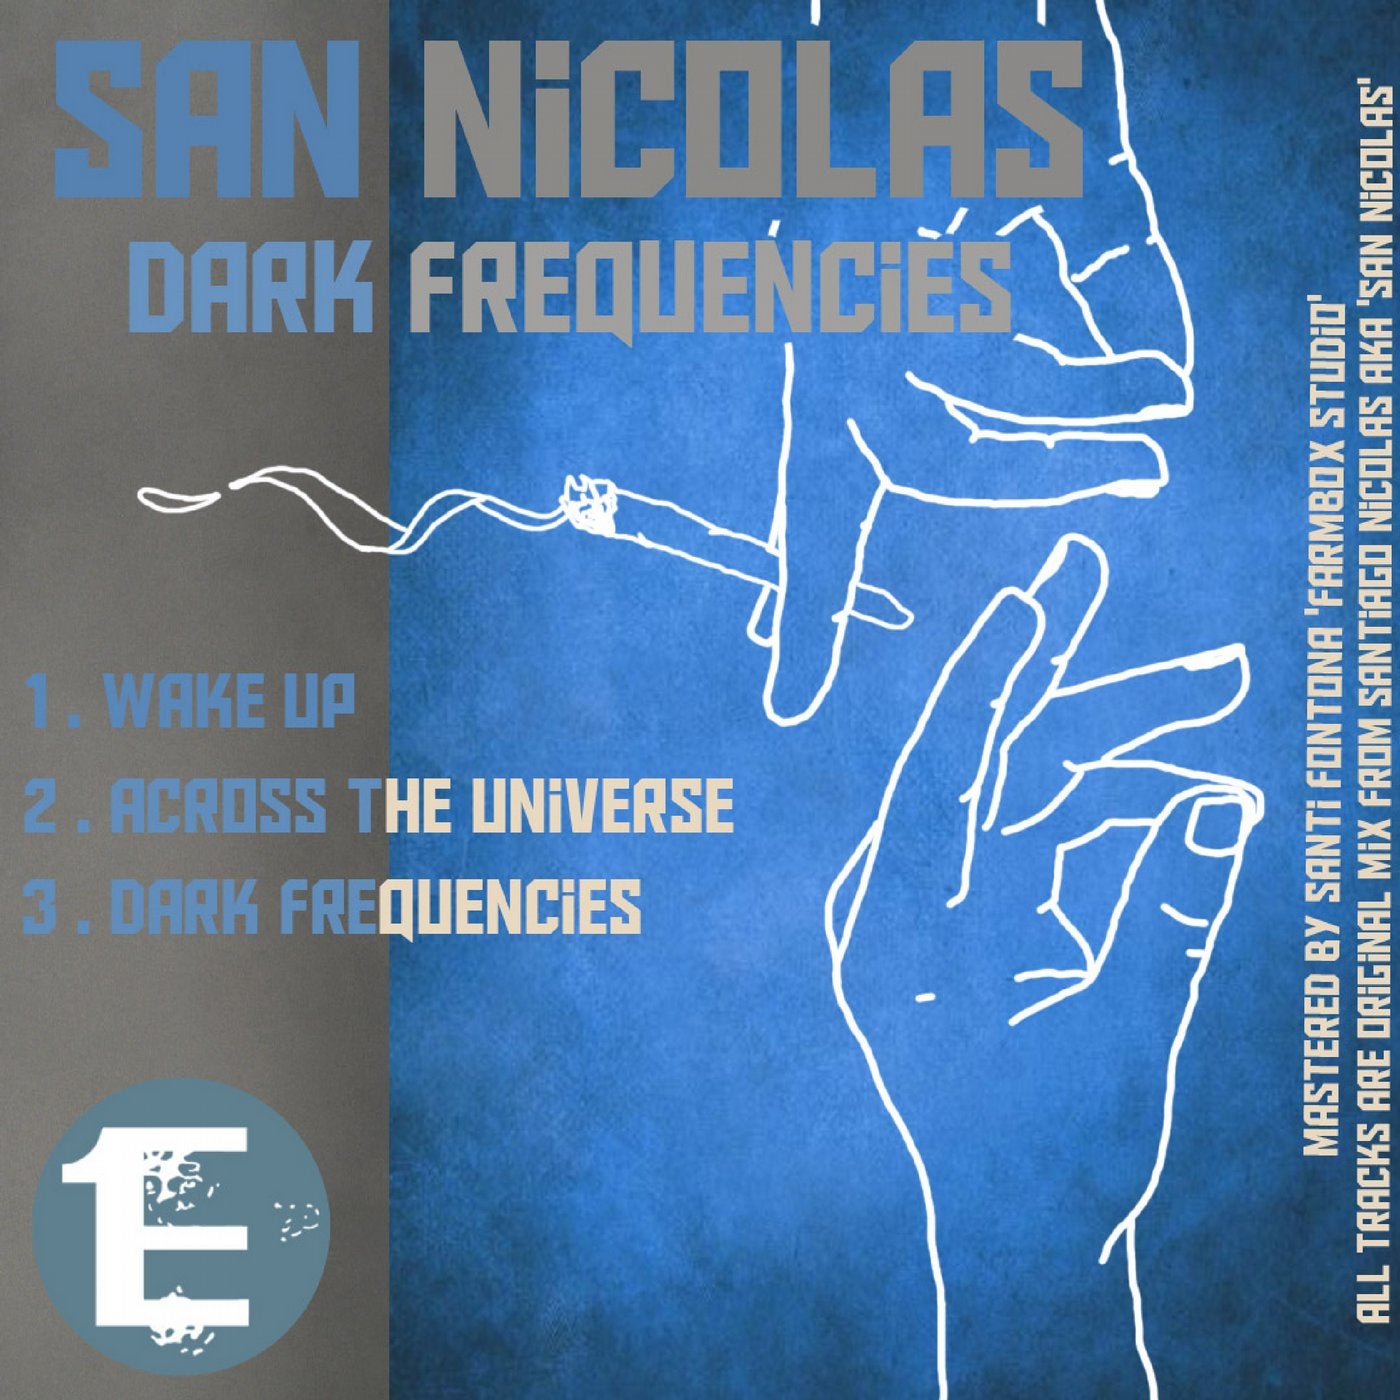 Dark Frequencies